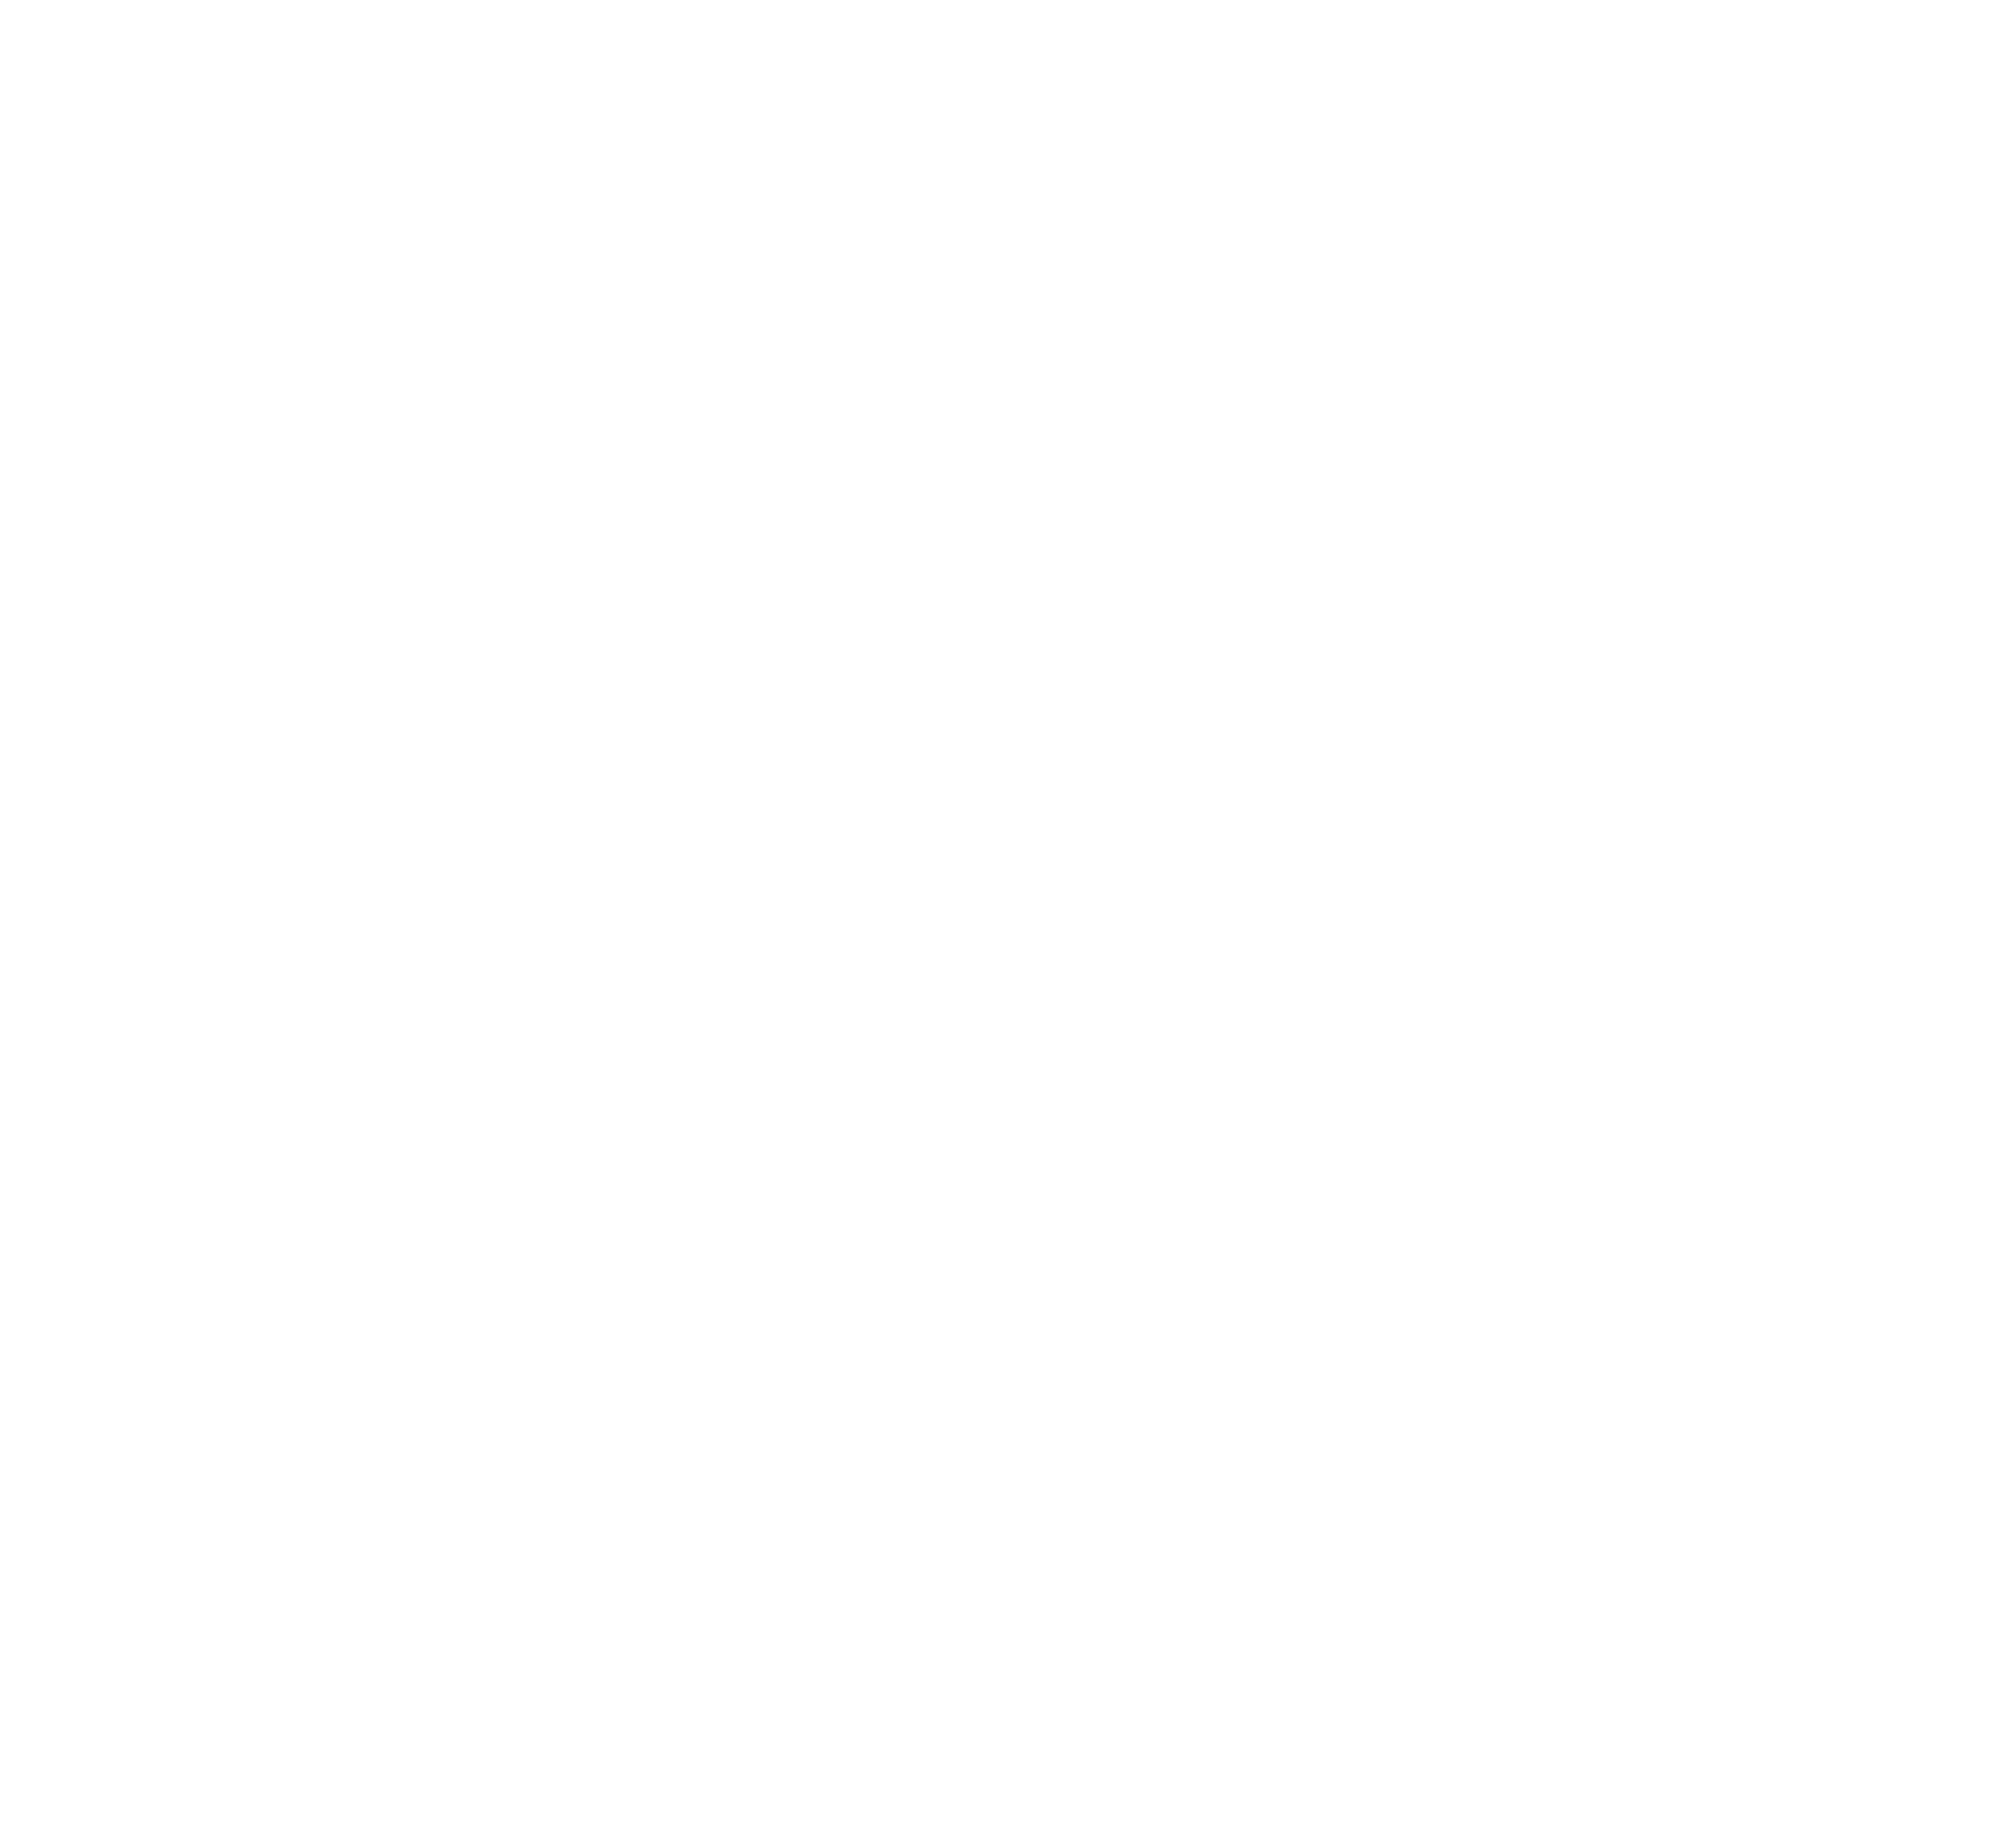 Into The Fog